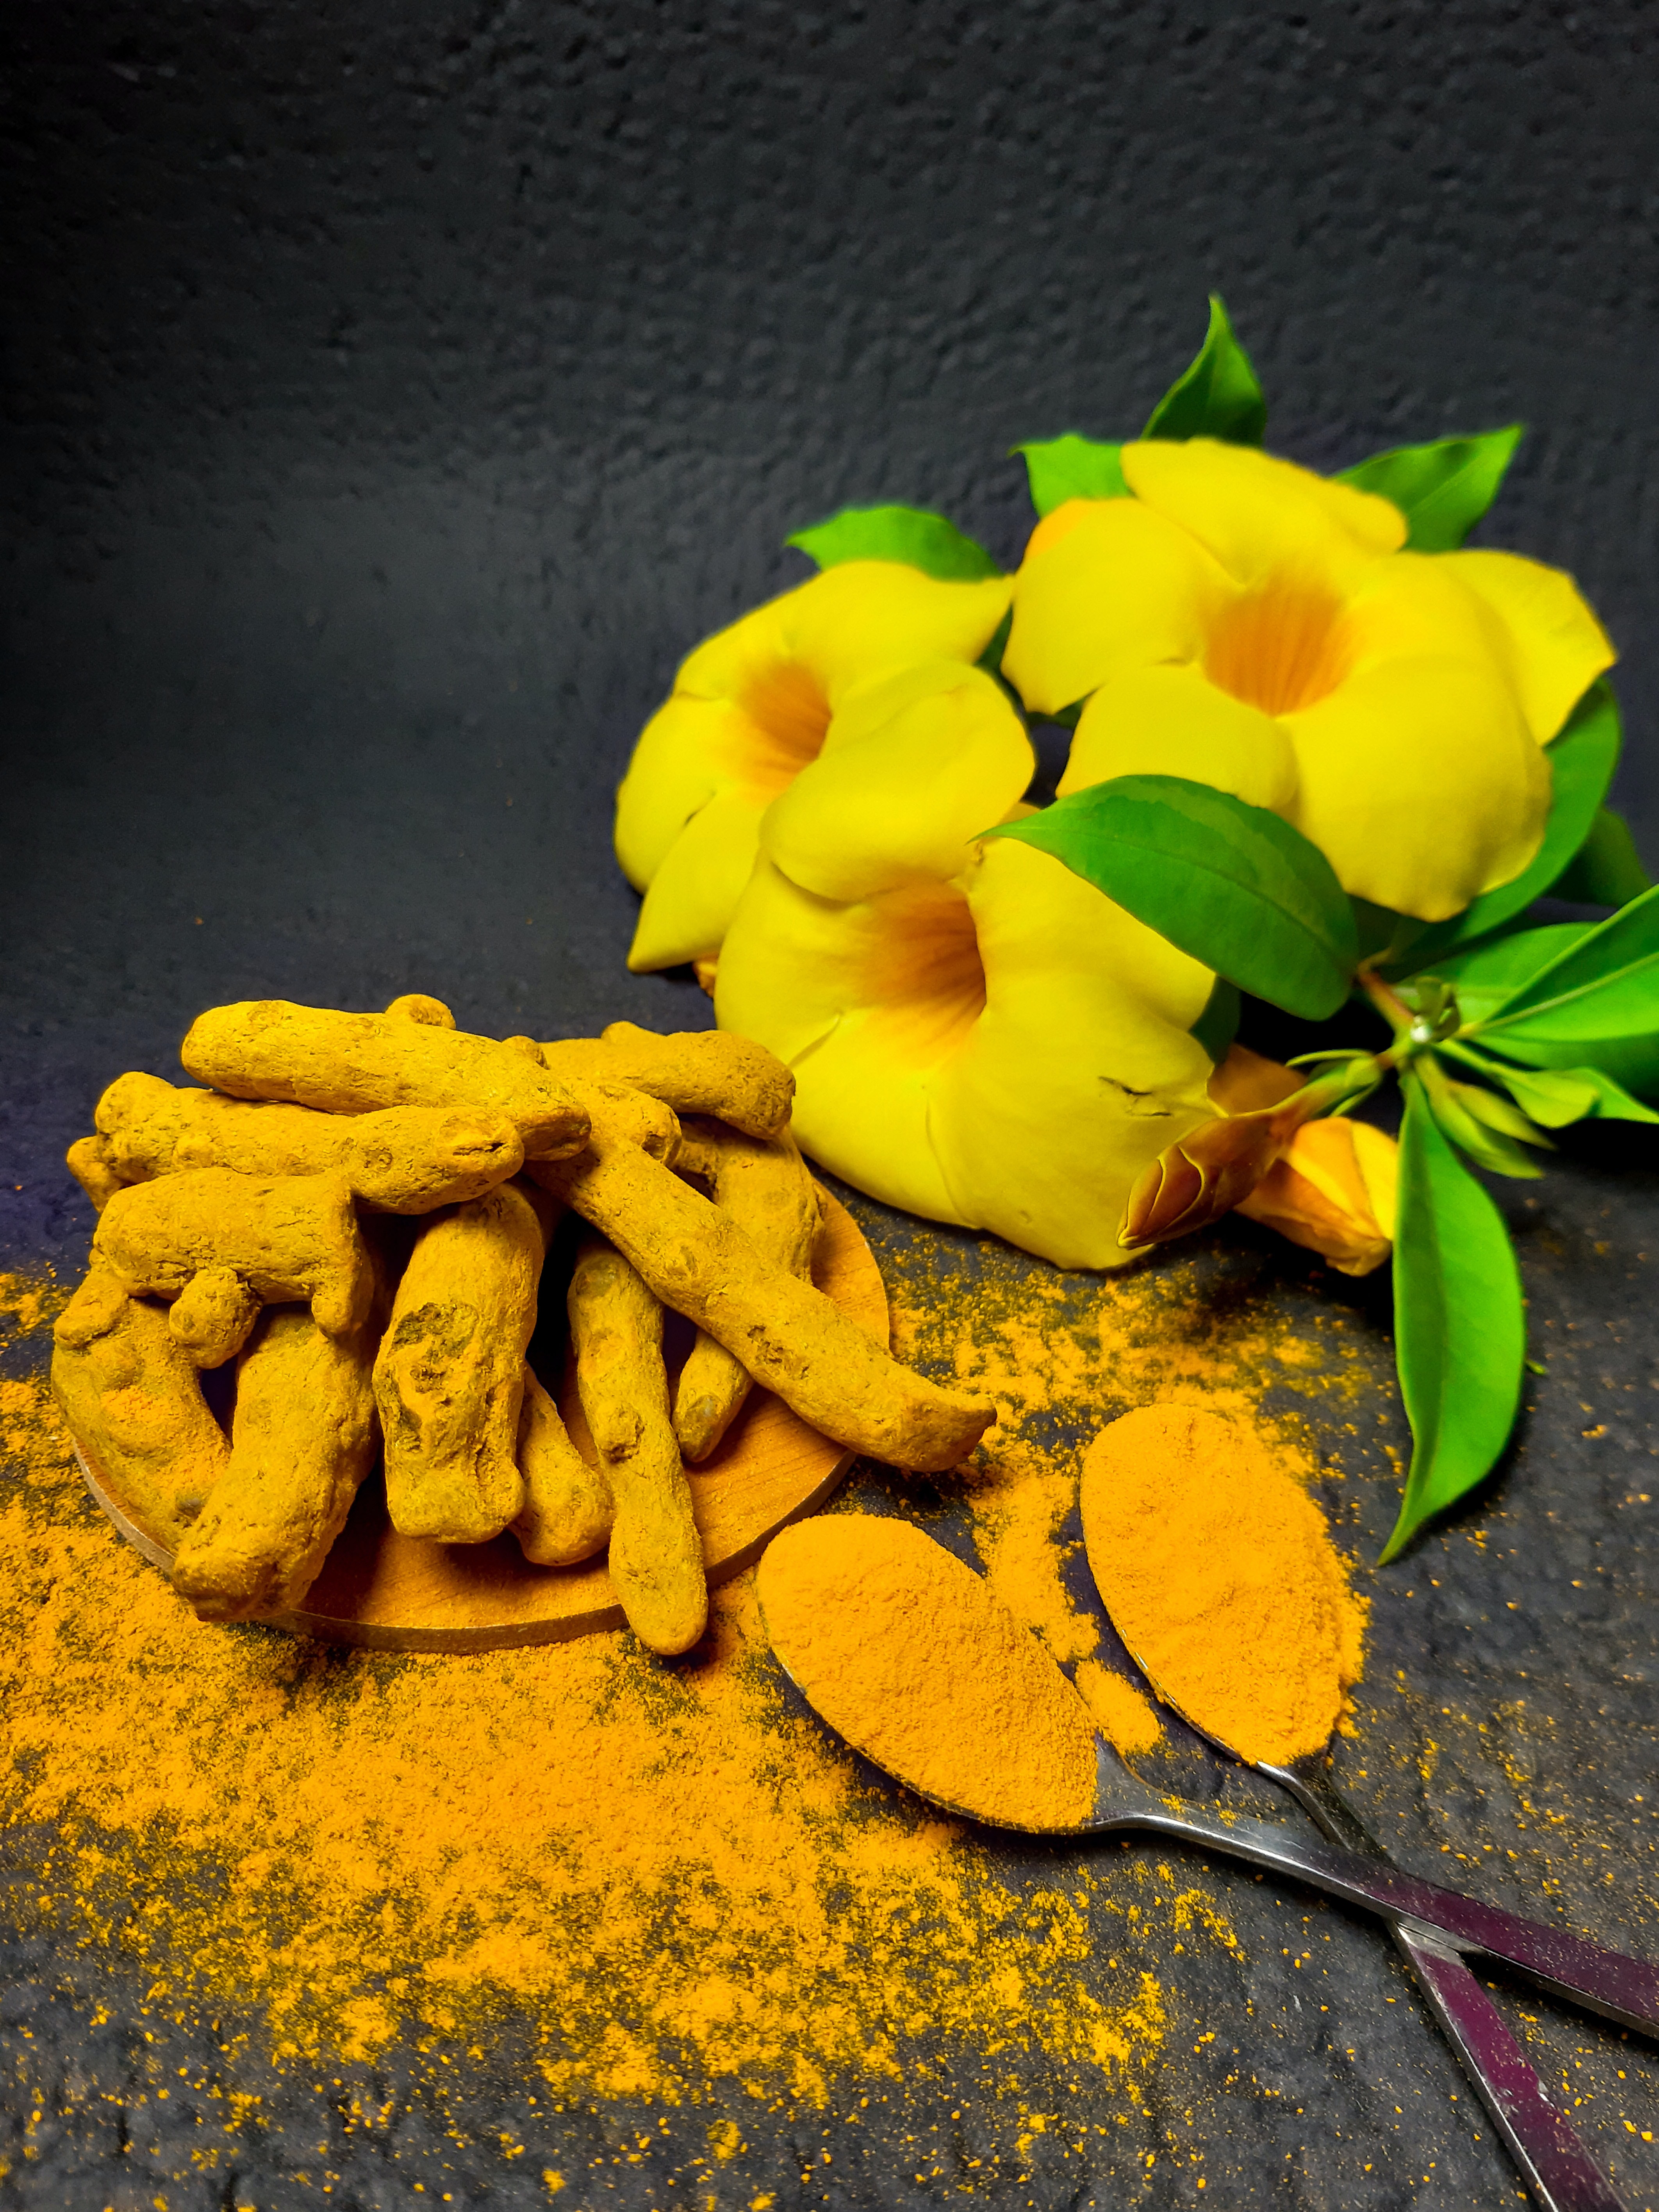 Quels sont les bienfaits du safran pour la santé? – L'île aux épices